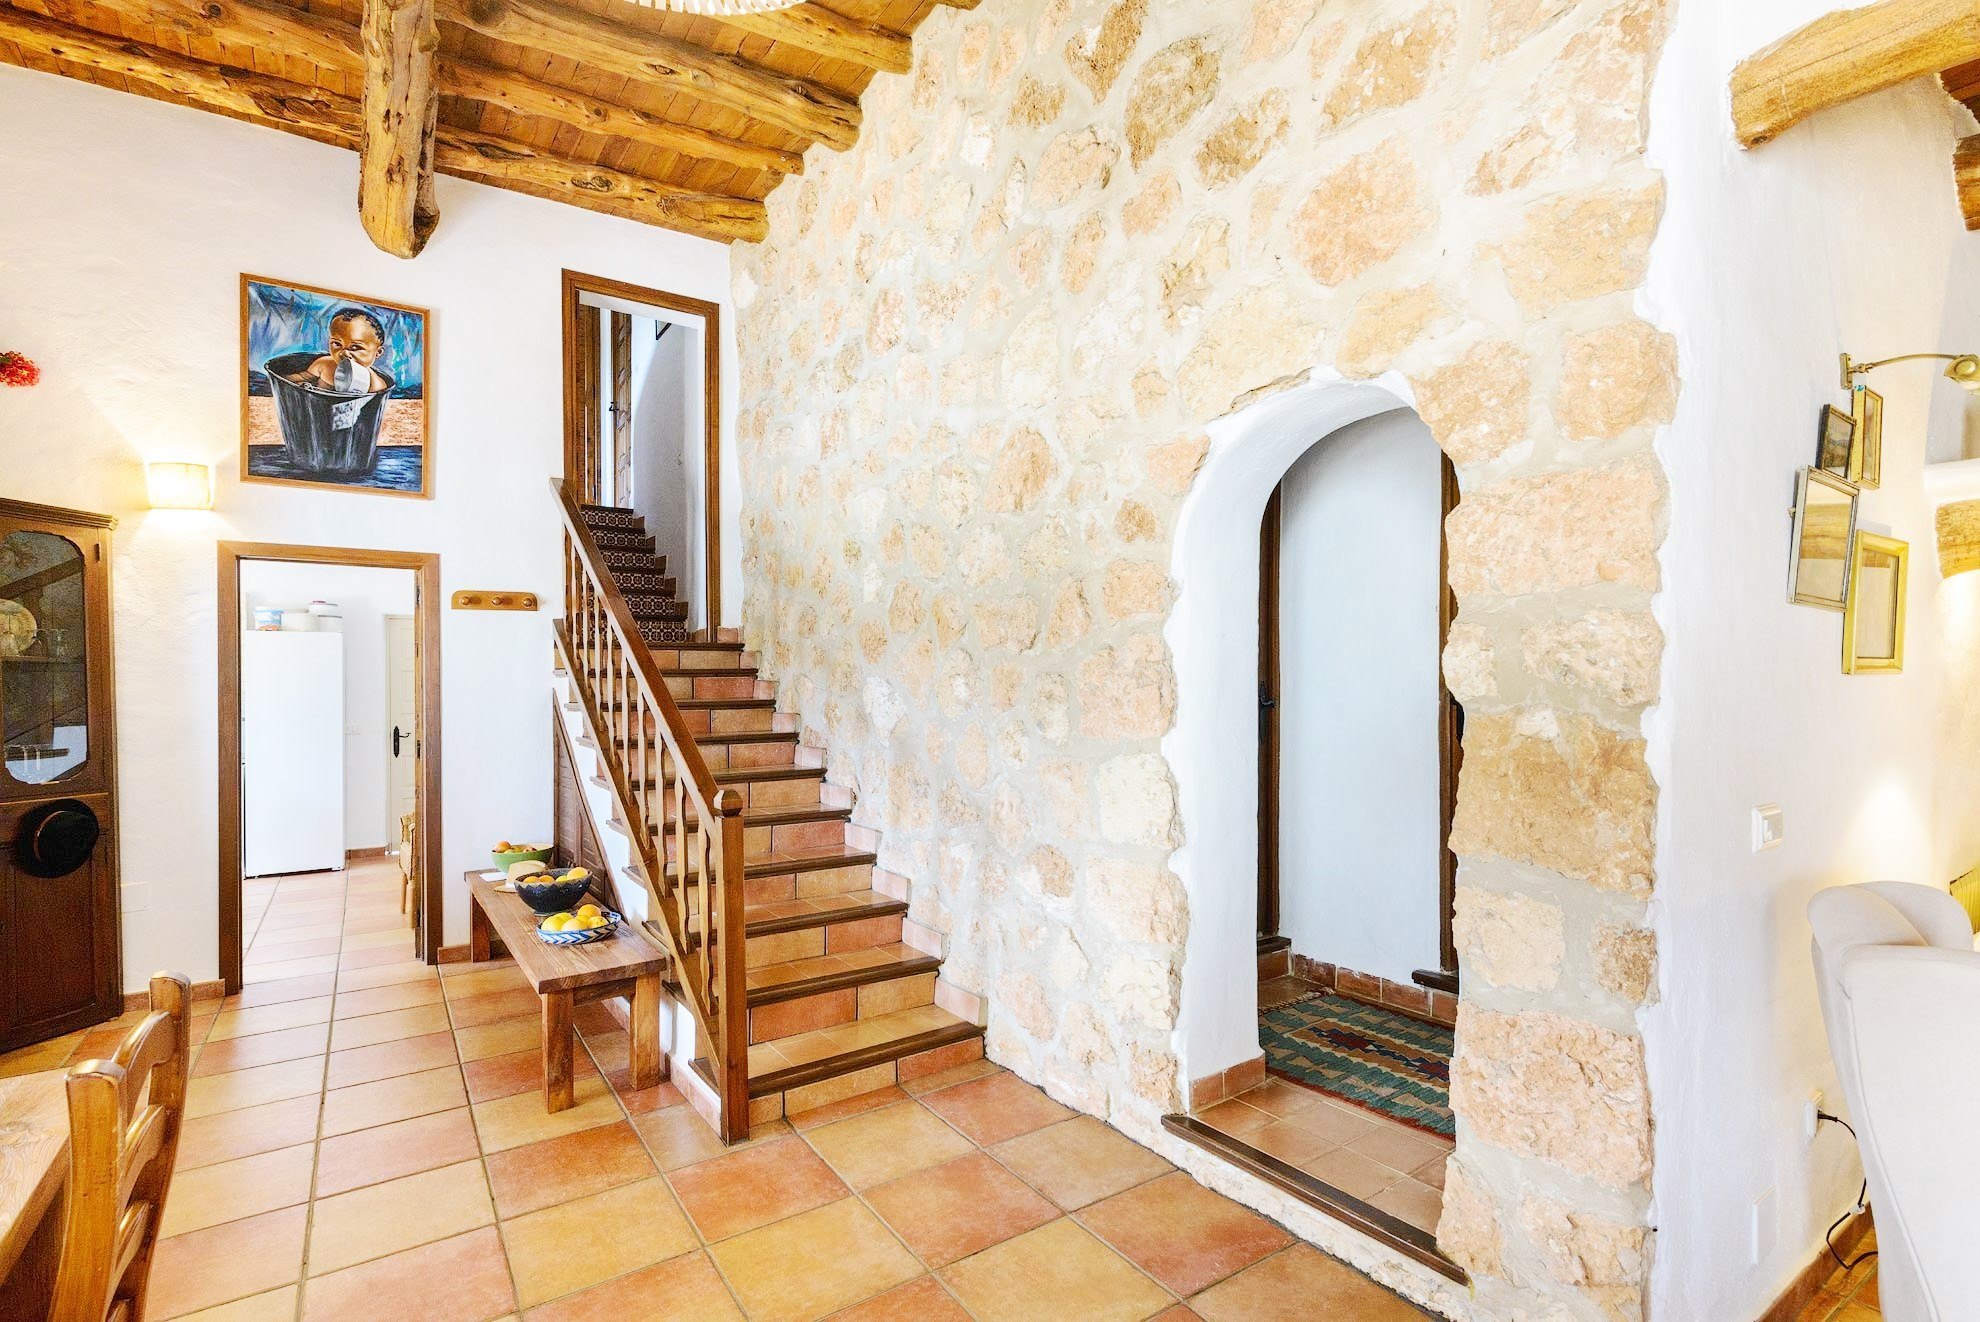 Villa amplia y luminosa de estilo tradicional ibicenco con excelentes vistas